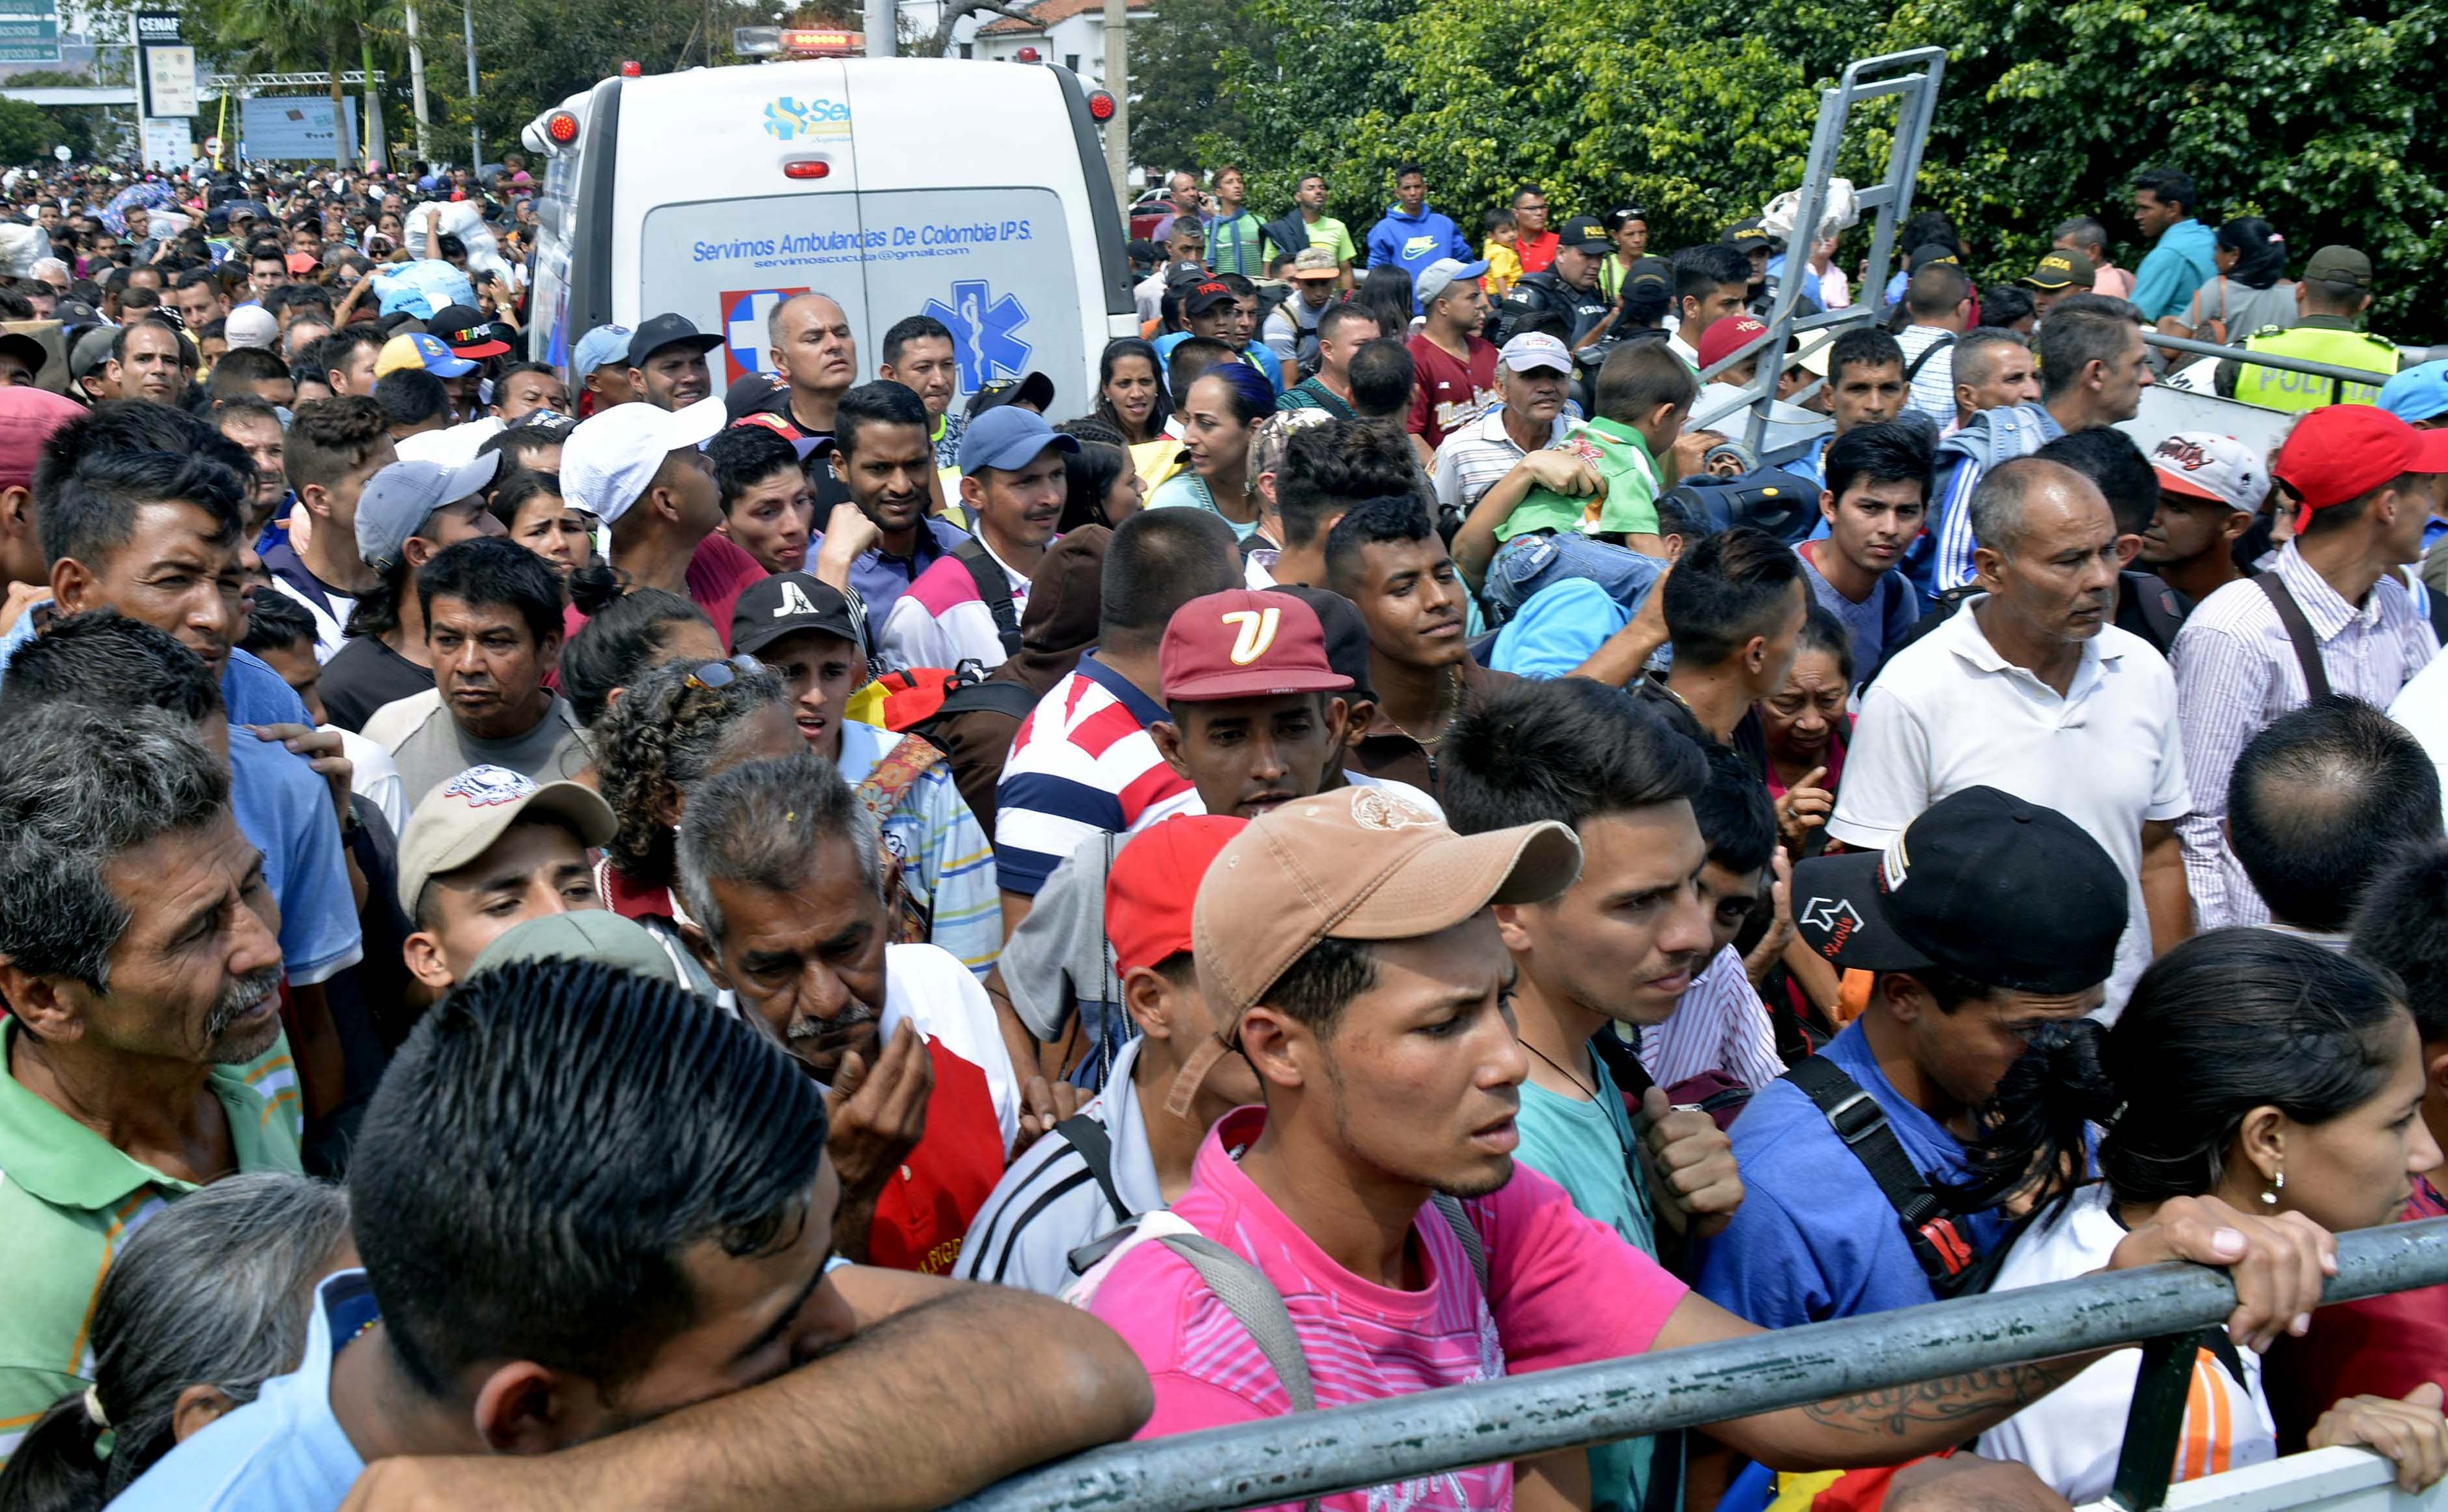 2018. február 9. Cucuta, Kolumbia. Venezuealiak ezrei próbálnak bejutni Kolumbiába, a cucutai átkelőnél, ahol szigorított határellenőrzést vezettek be.  EPA/Edinsson Figueroa/ HANDOUT 